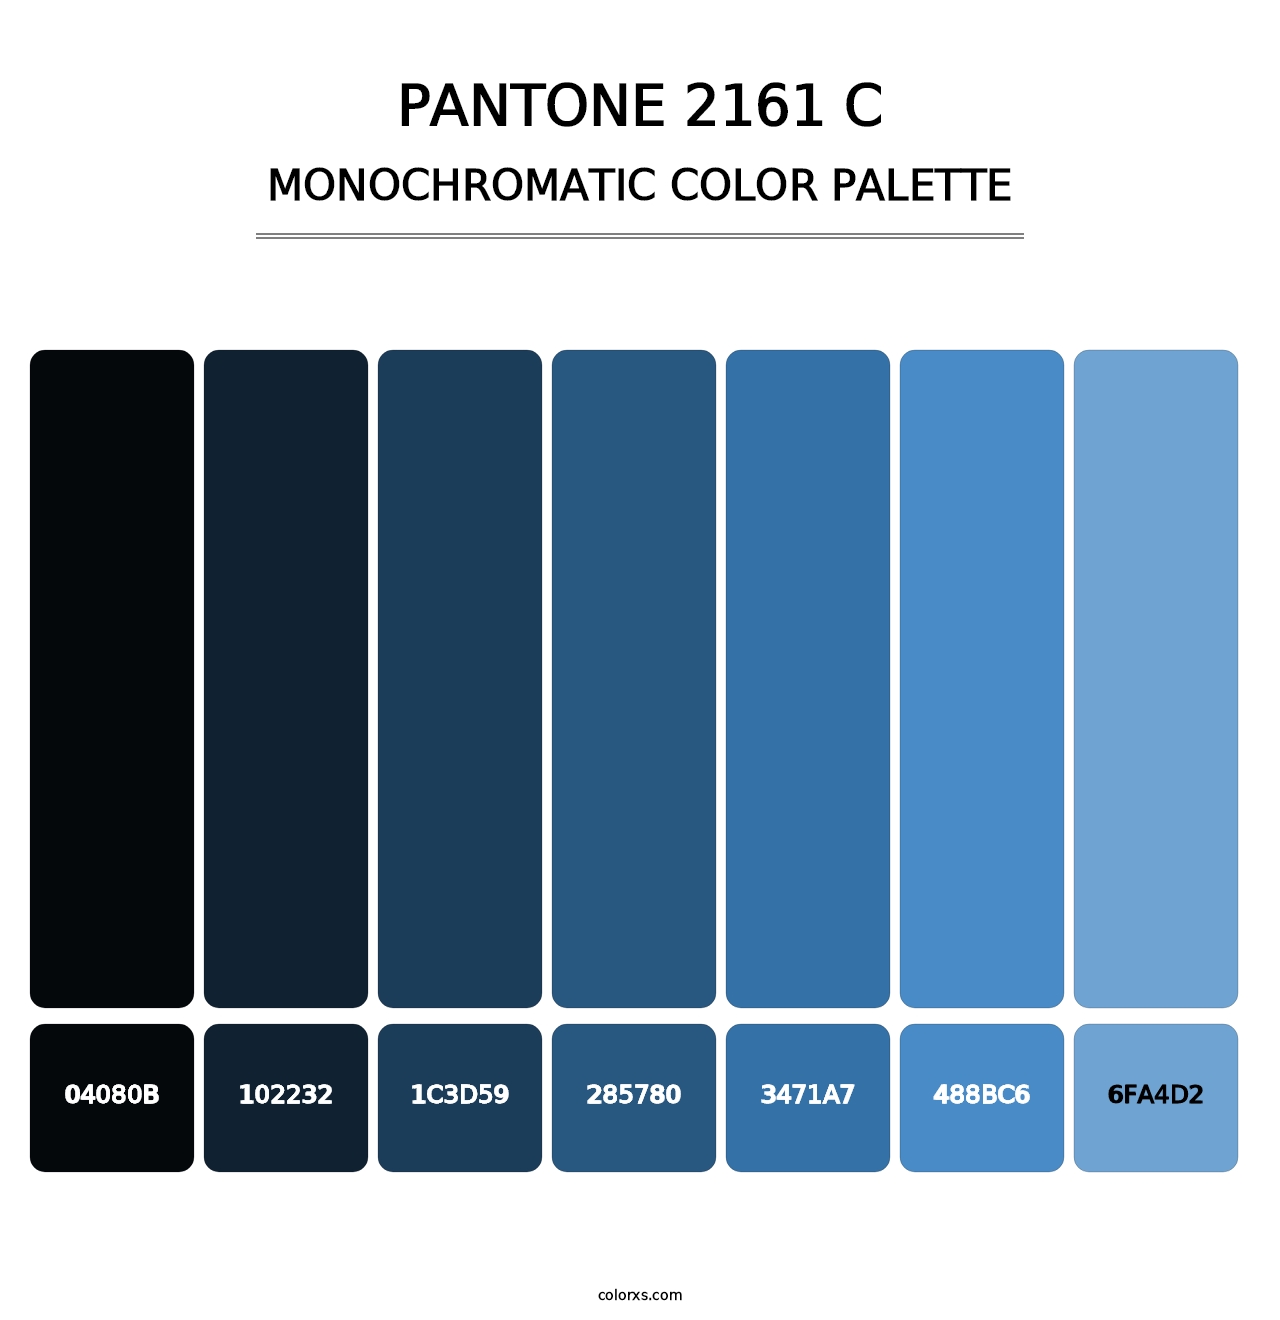 PANTONE 2161 C - Monochromatic Color Palette